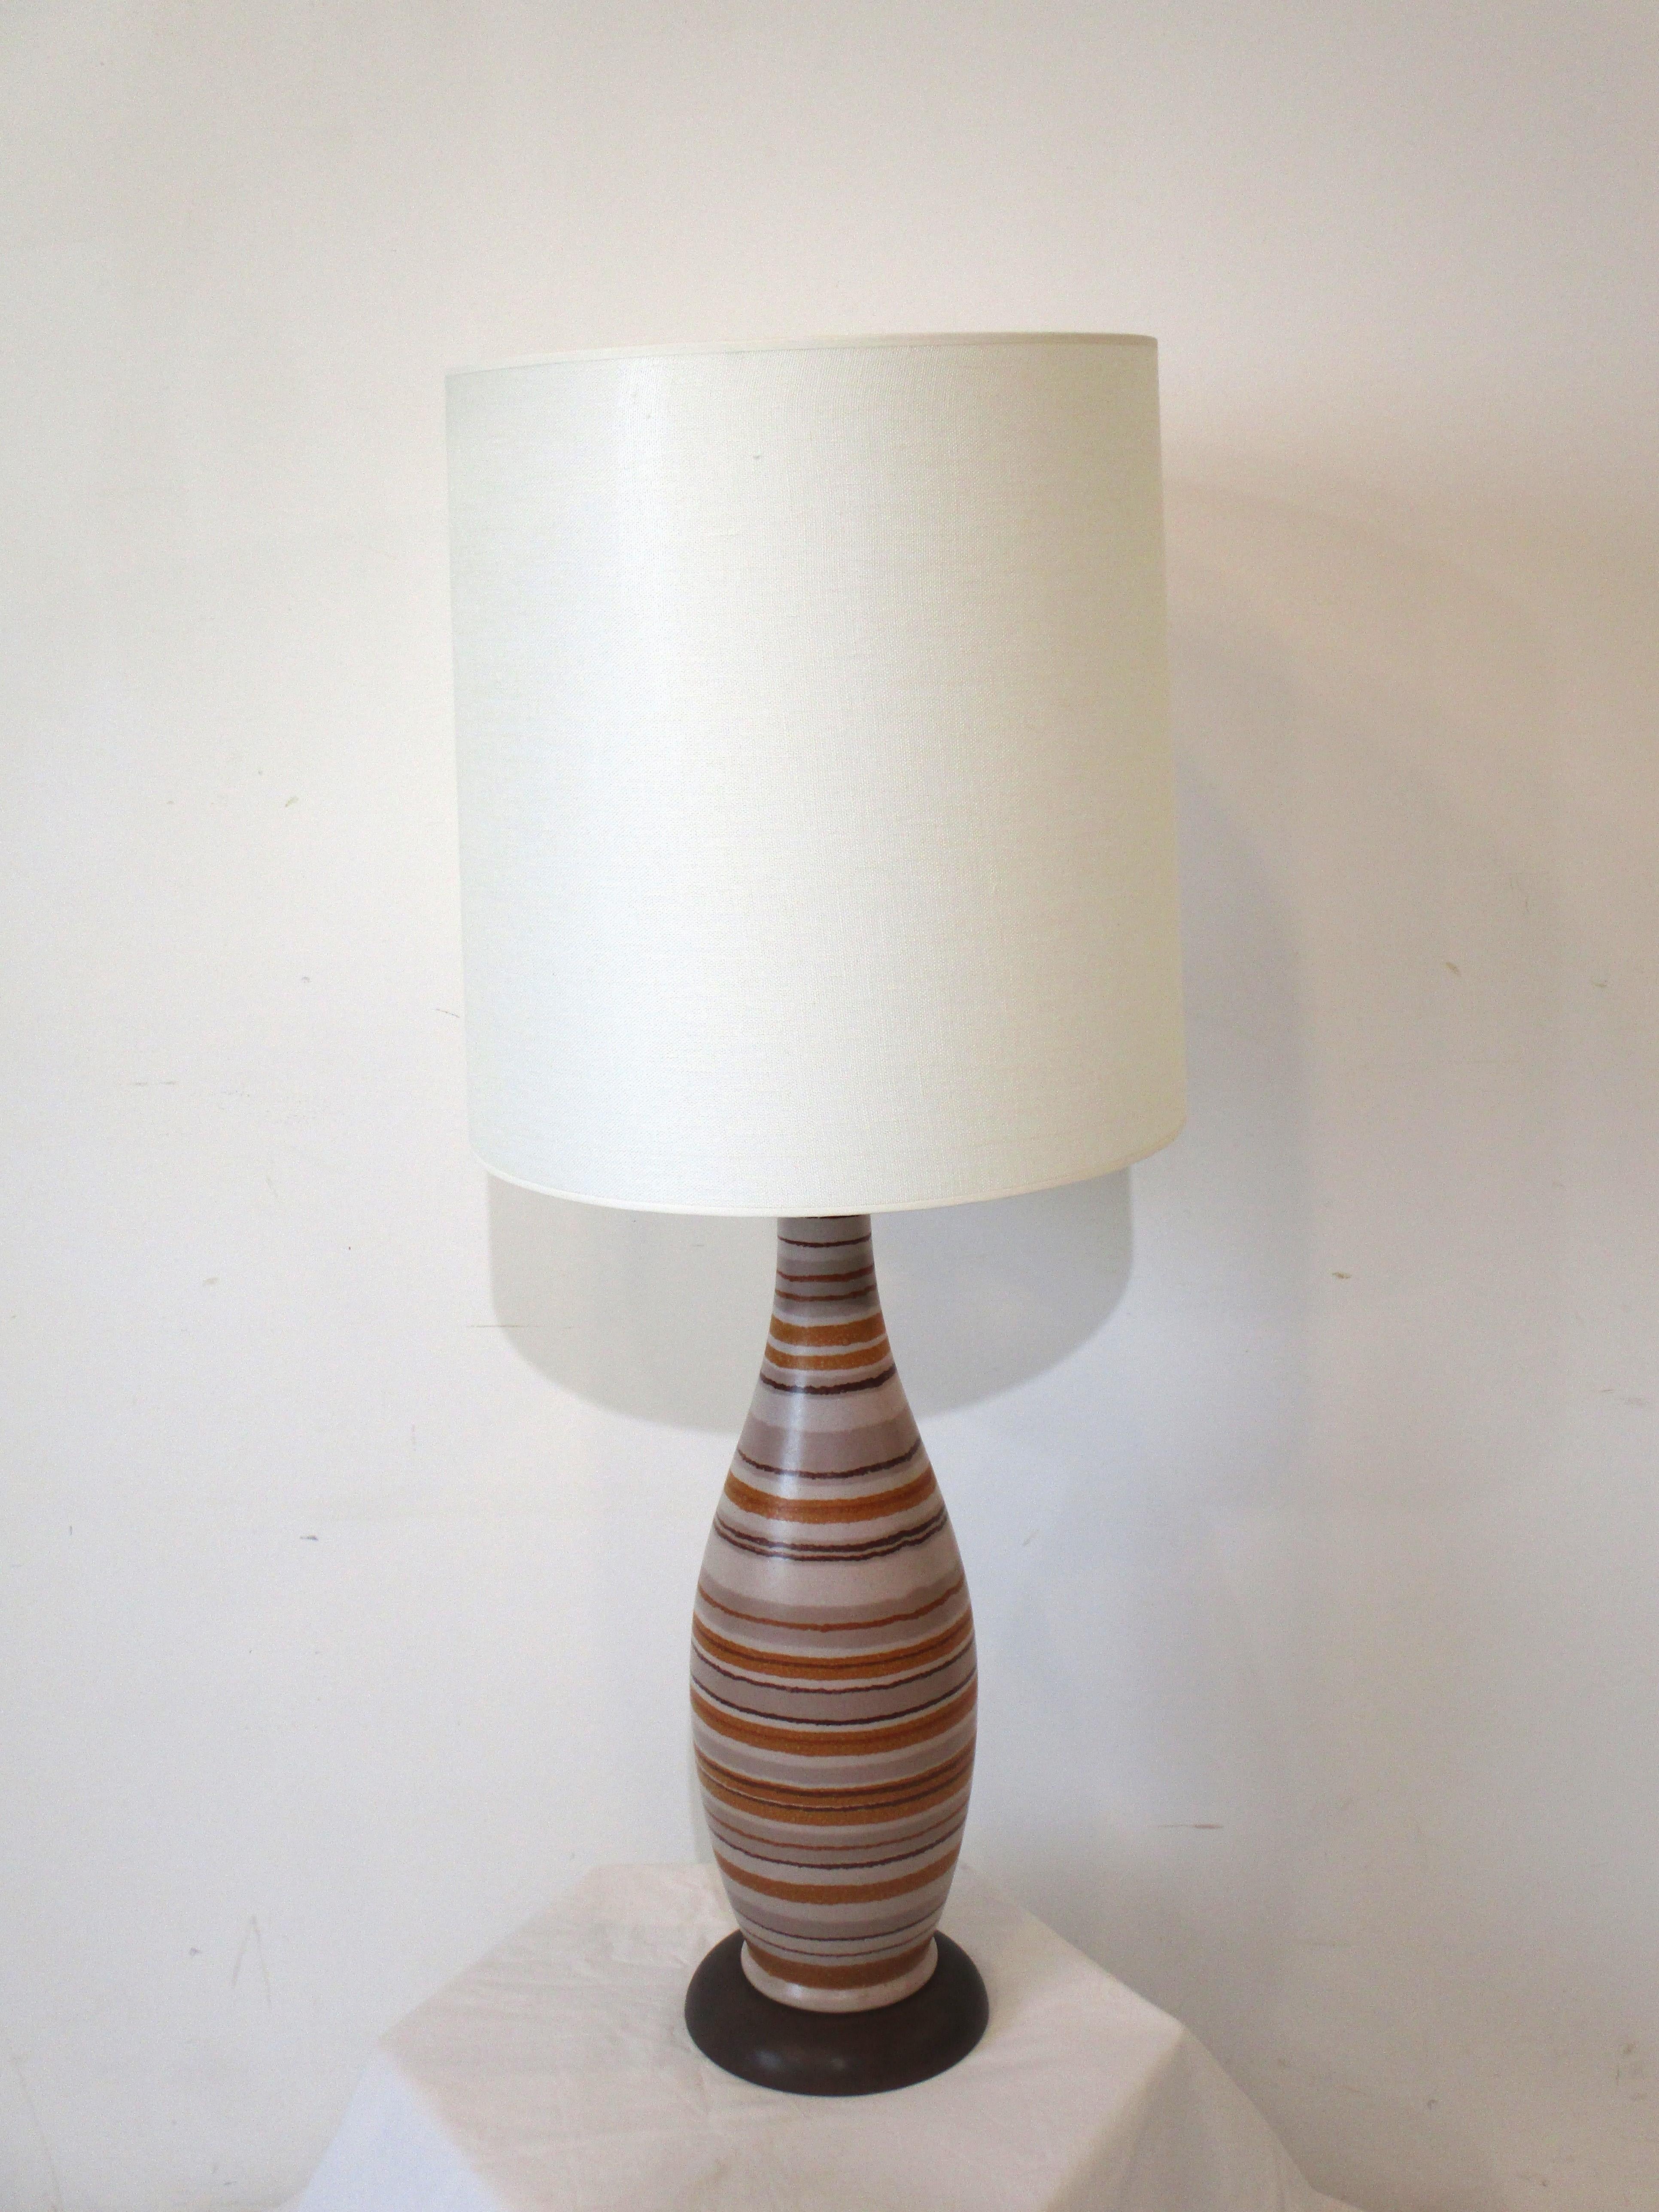 Lampe de table en céramique du milieu du siècle avec un corps de couleur beige ayant des lignes d'orange brûlé, de bruns et de tans. Cette lampe repose sur une base en bois de couleur noyer foncé et est surmontée d'un abat-jour en lin de couleur